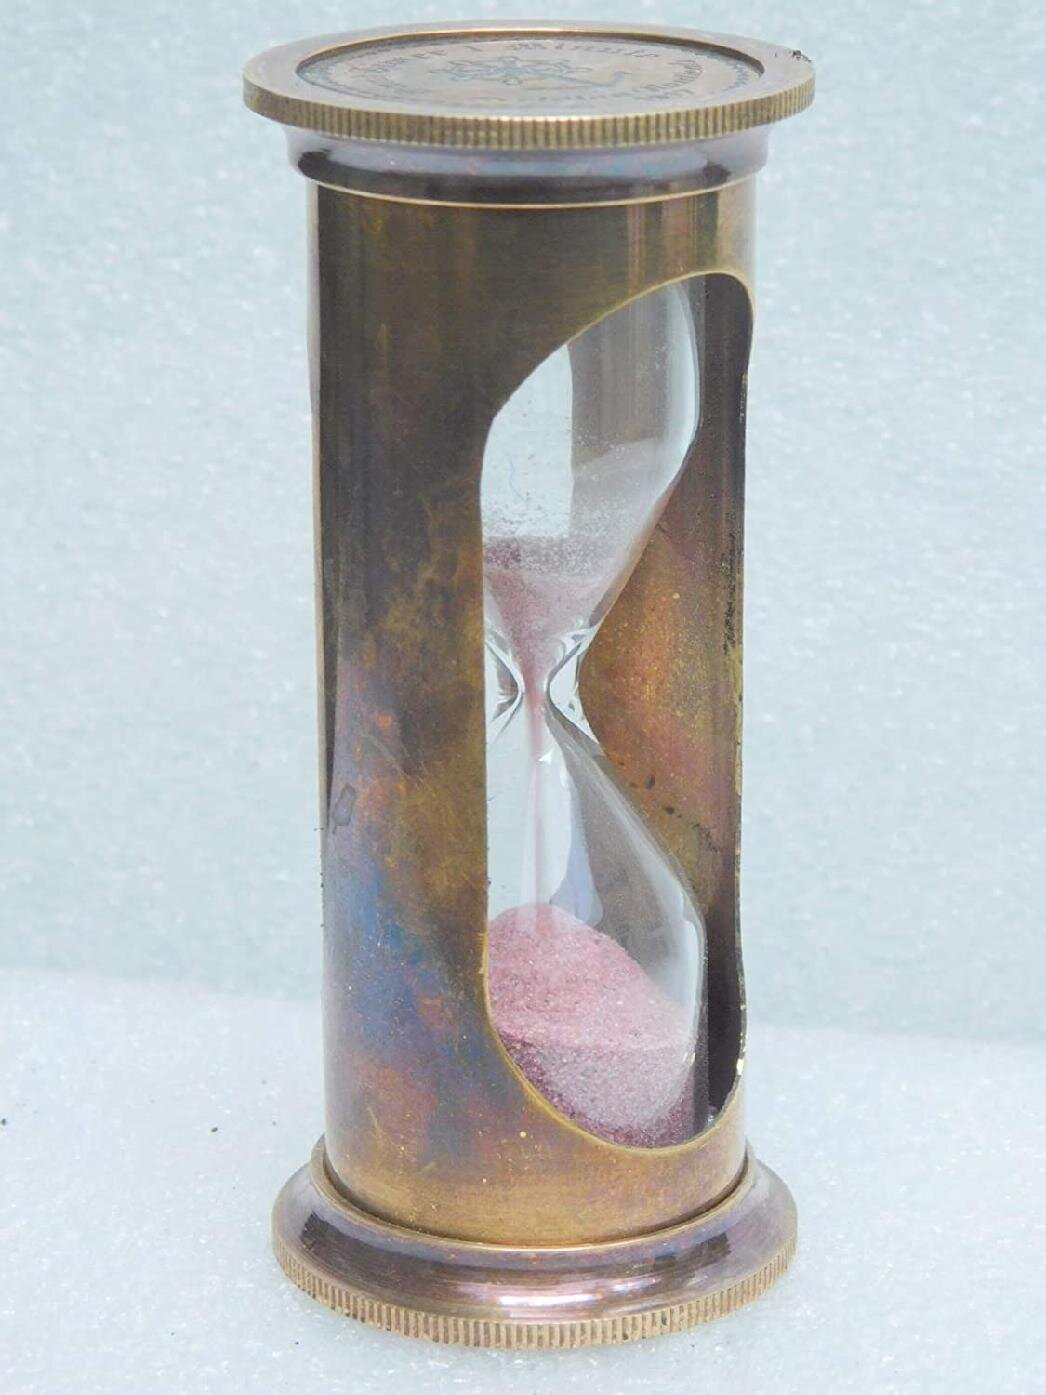 Details about   Decorative Antique Wooden Hourglass Vintage Nautical Decor Desktop Sand Timer 